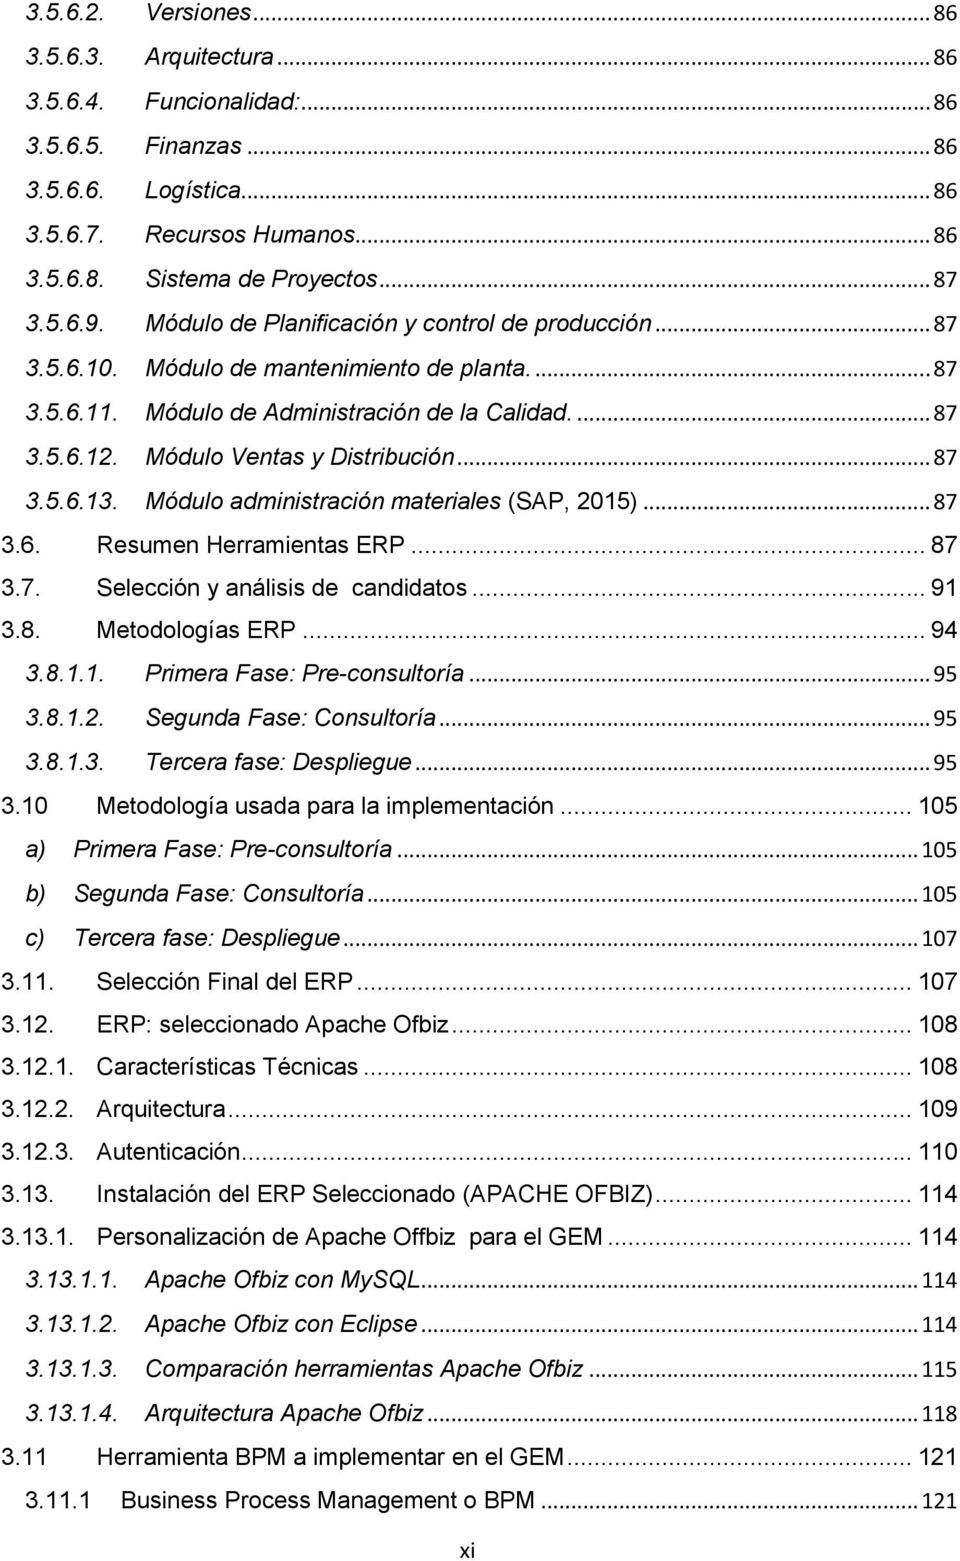 Módulo administración materiales (SAP, 2015) 87 3.6. Resumen Herramientas ERP. 87 3.7. Selección y análisis de candidatos. 91 3.8. Metodologías ERP.. 94 3.8.1.1. Primera Fase: Pre-consultoría.. 95 3.